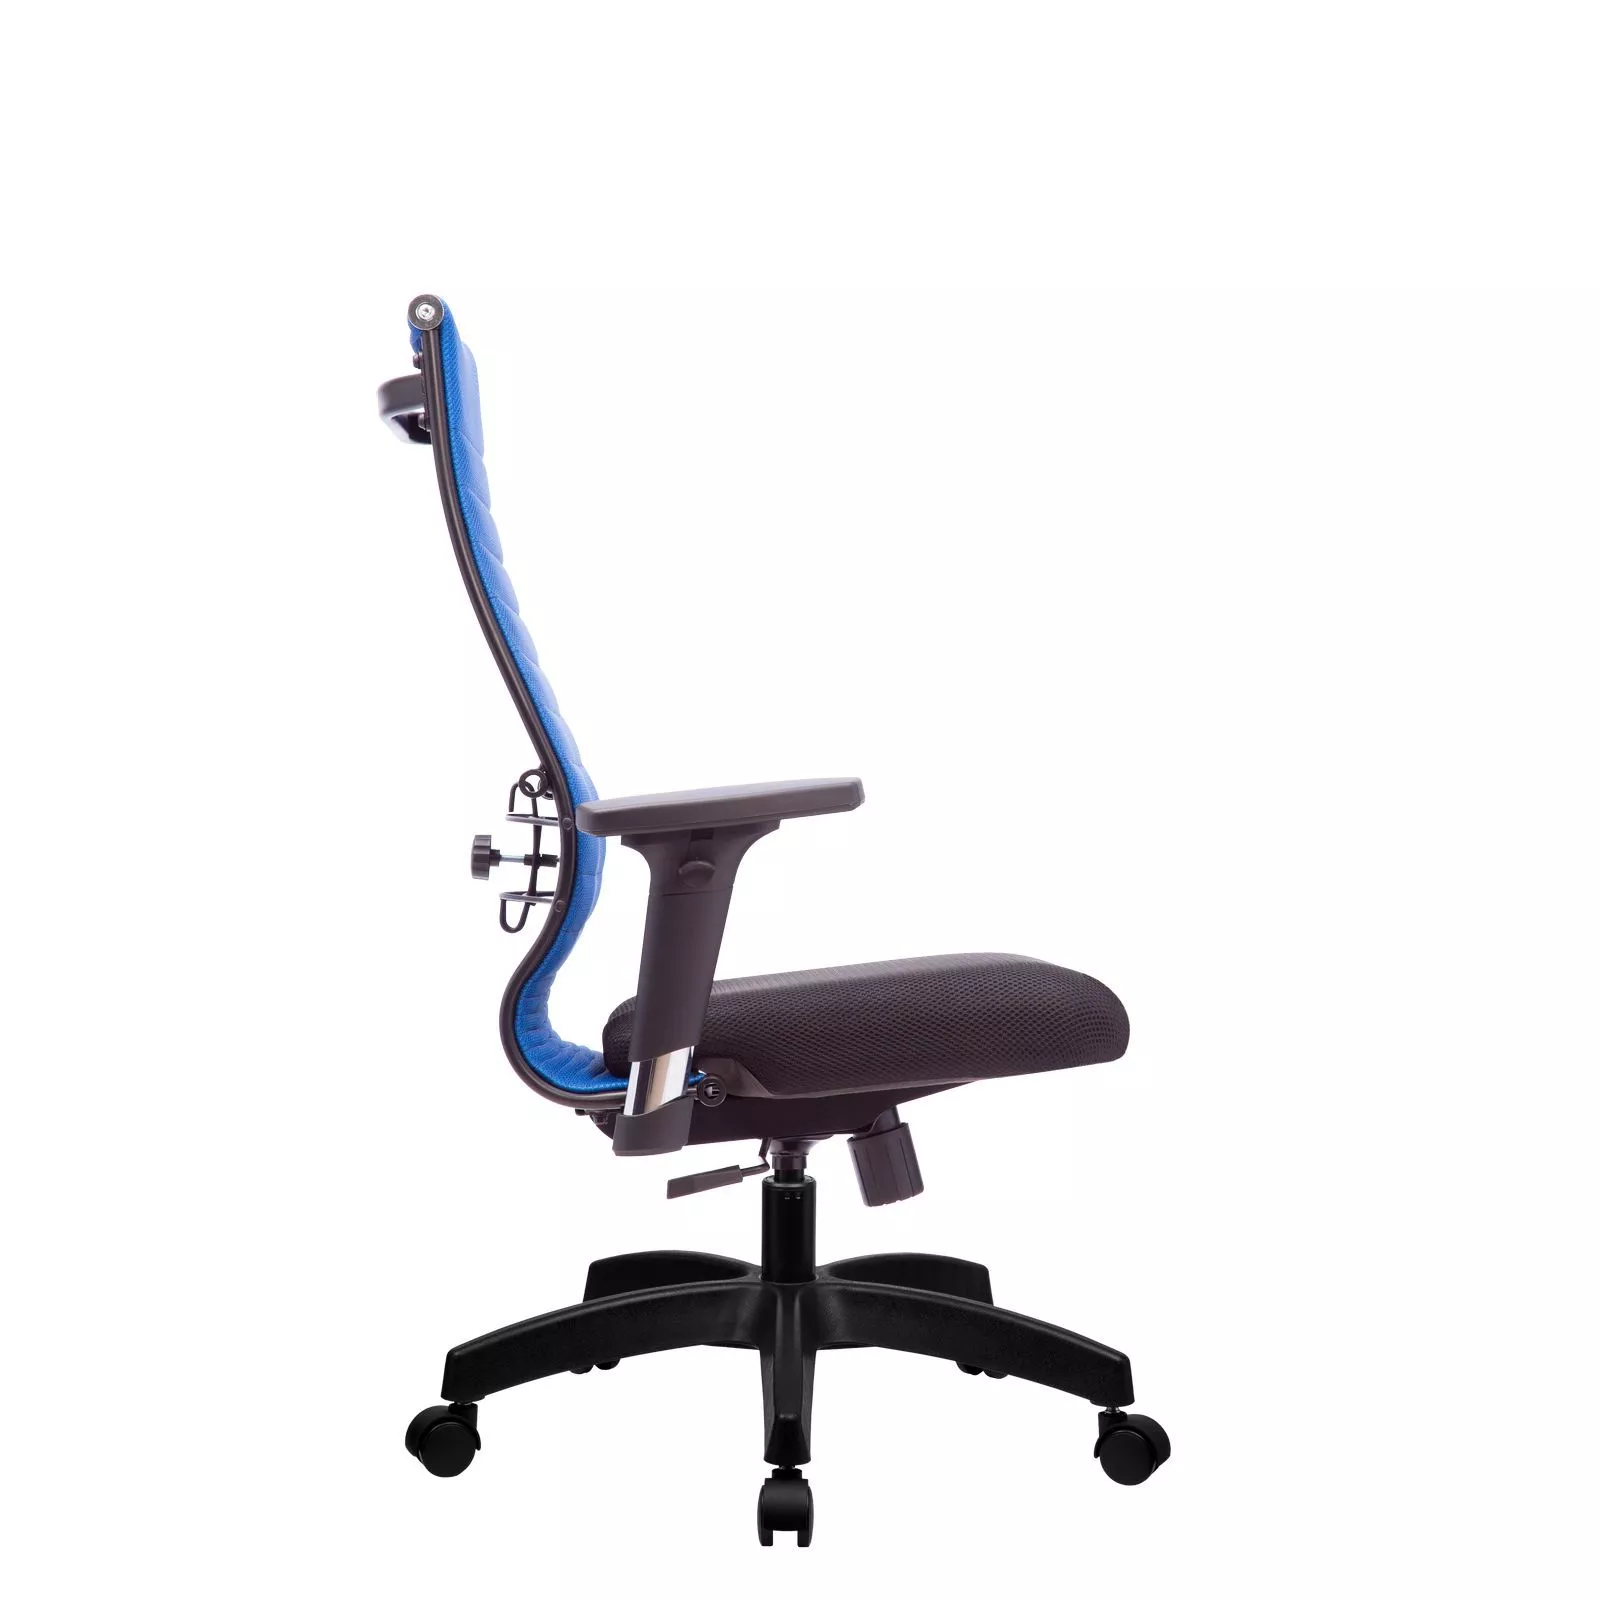 Кресло компьютерное Метта Комплект 19/2D Pl синий